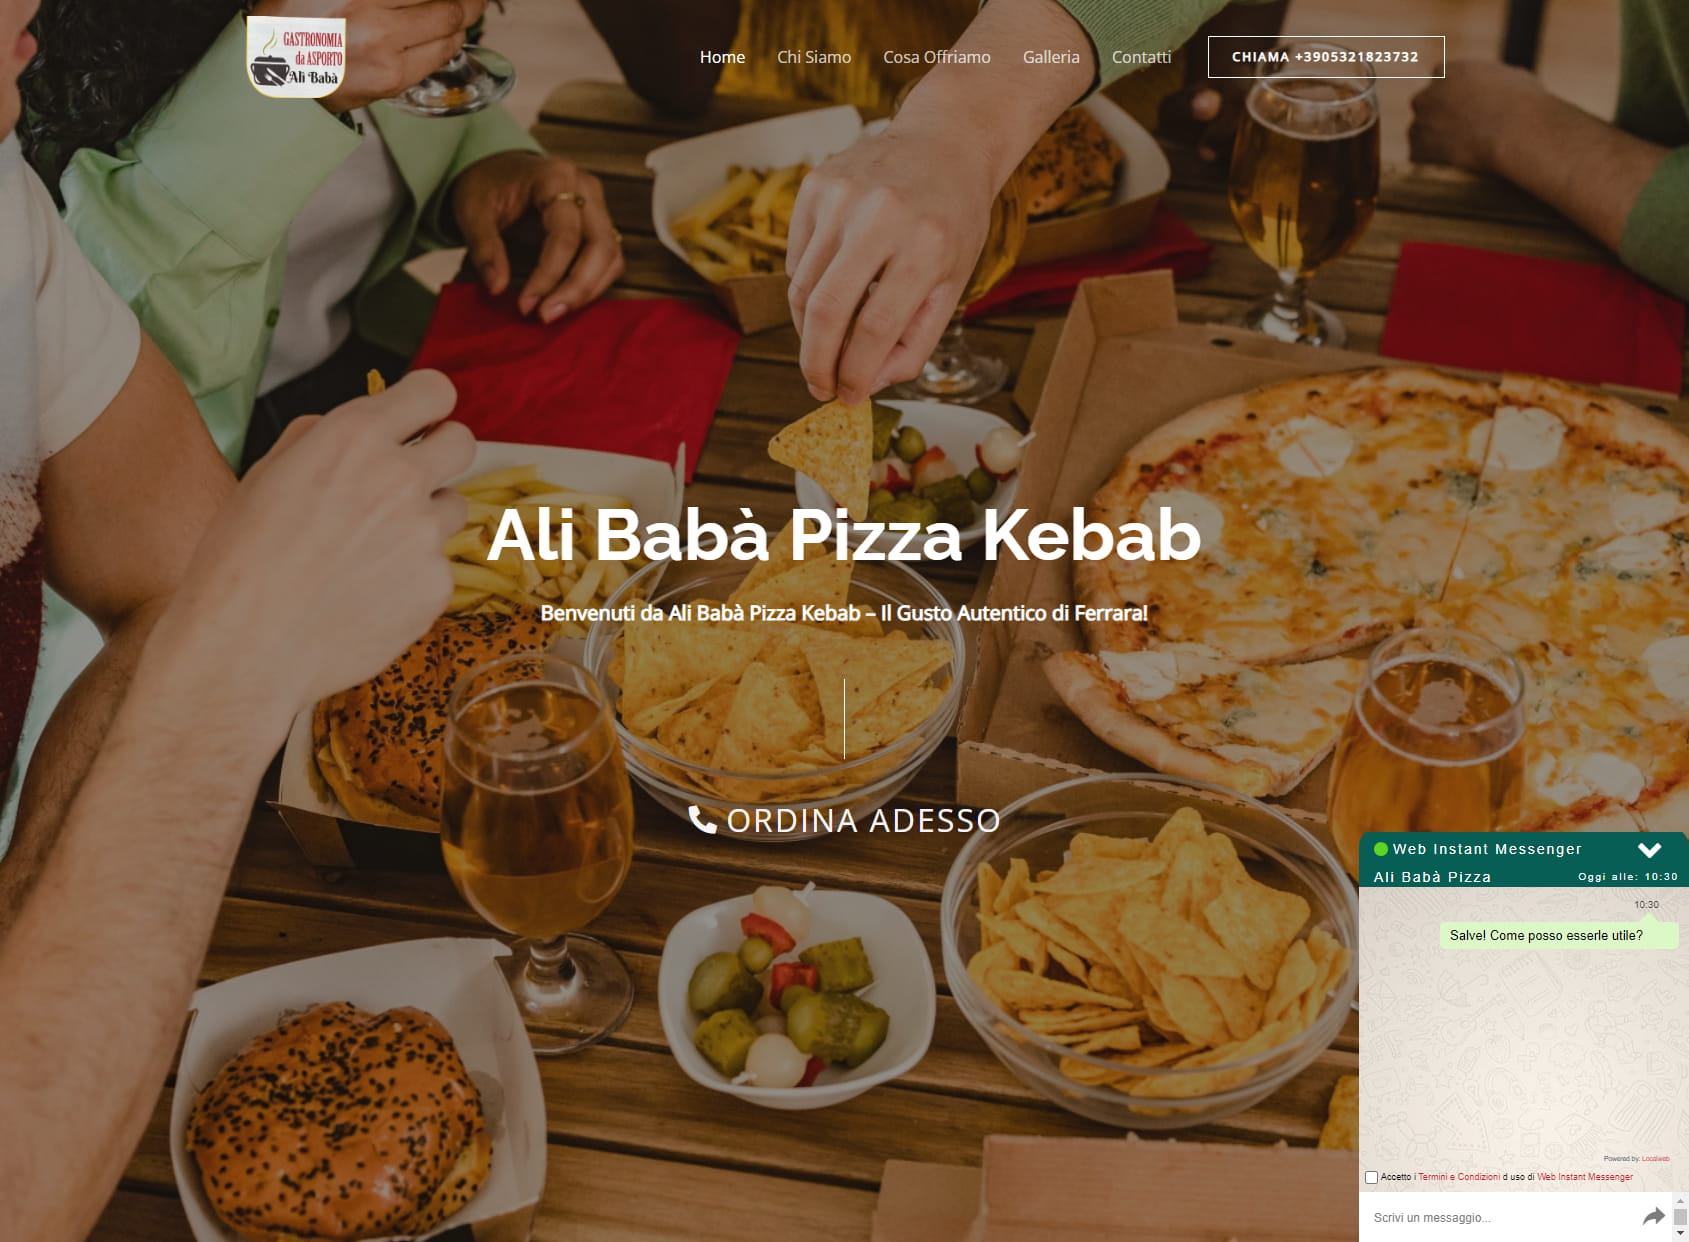 Ali Babà Pizza Kebab